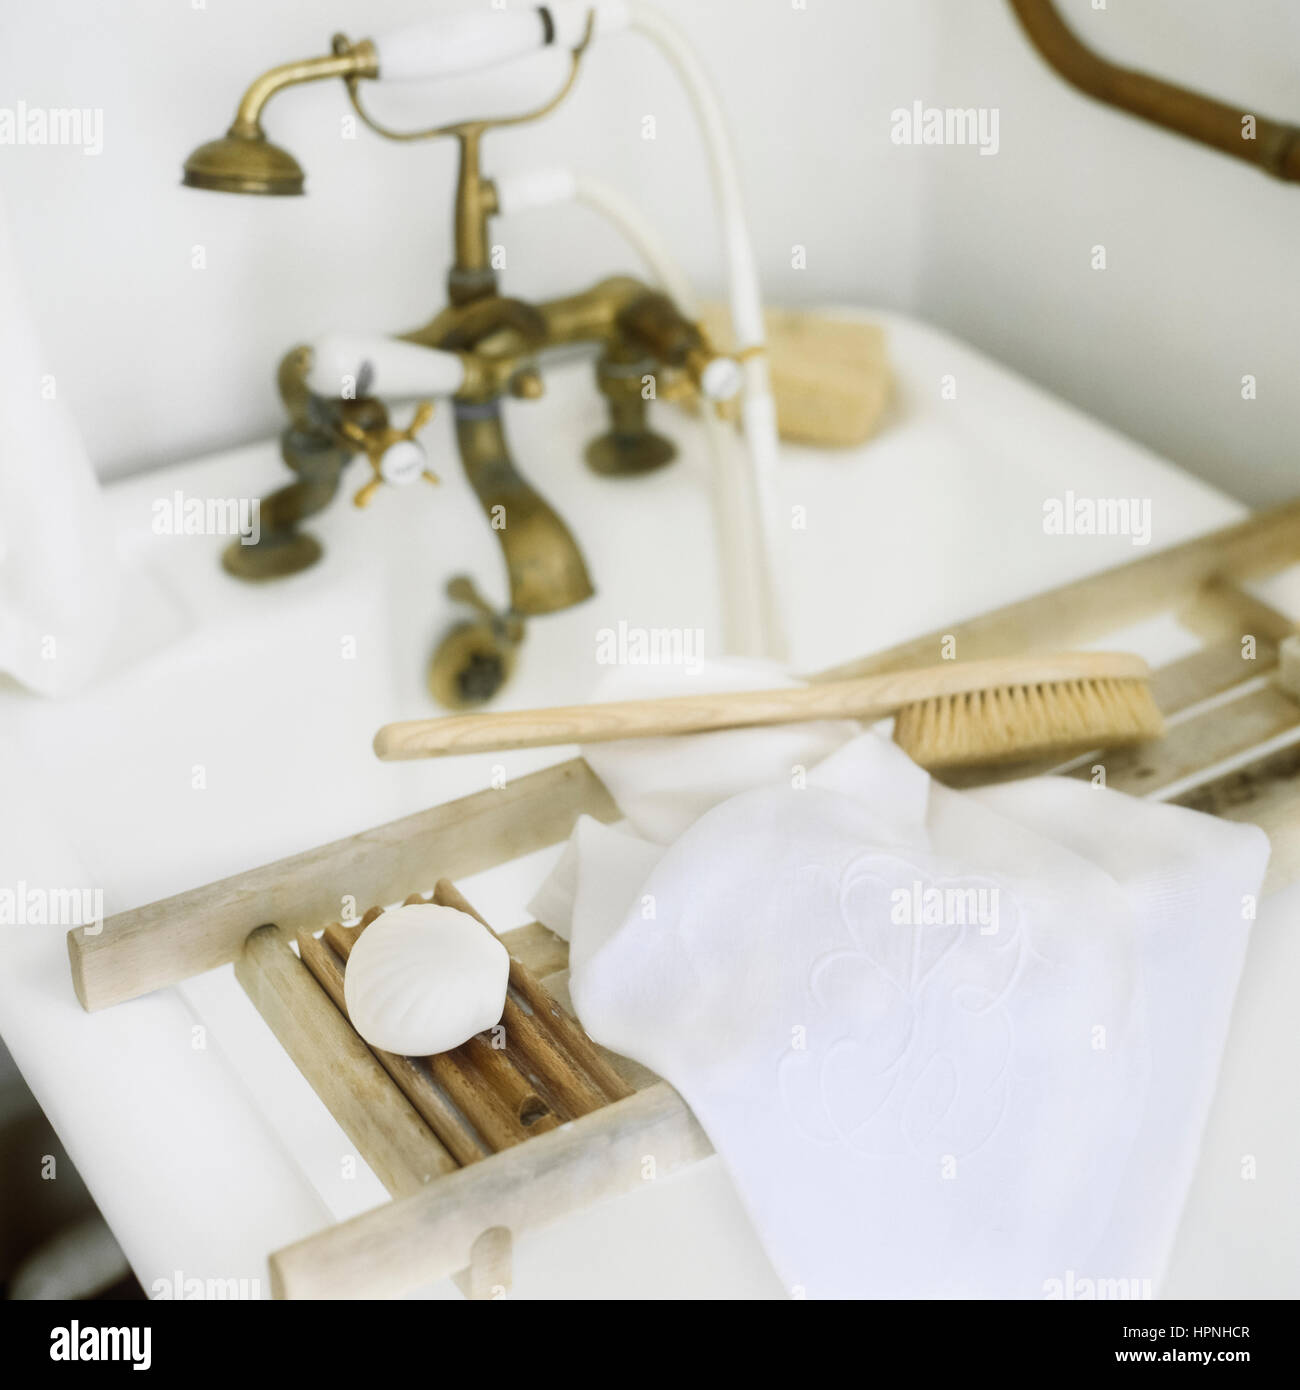 Toiletries on a bathtub rack. Stock Photo